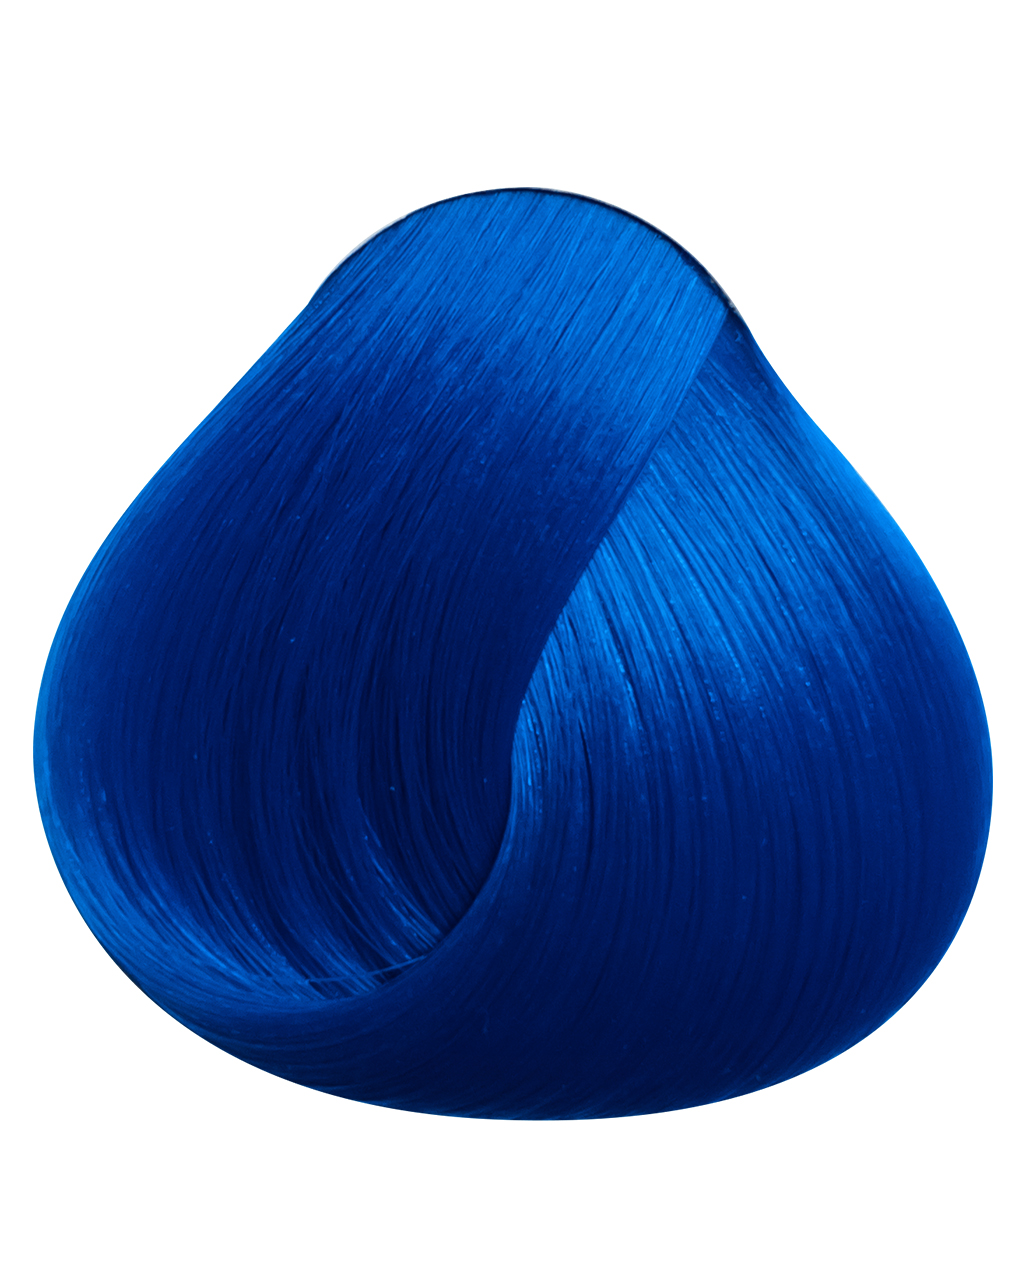 Краска для волос directions atlantic blue